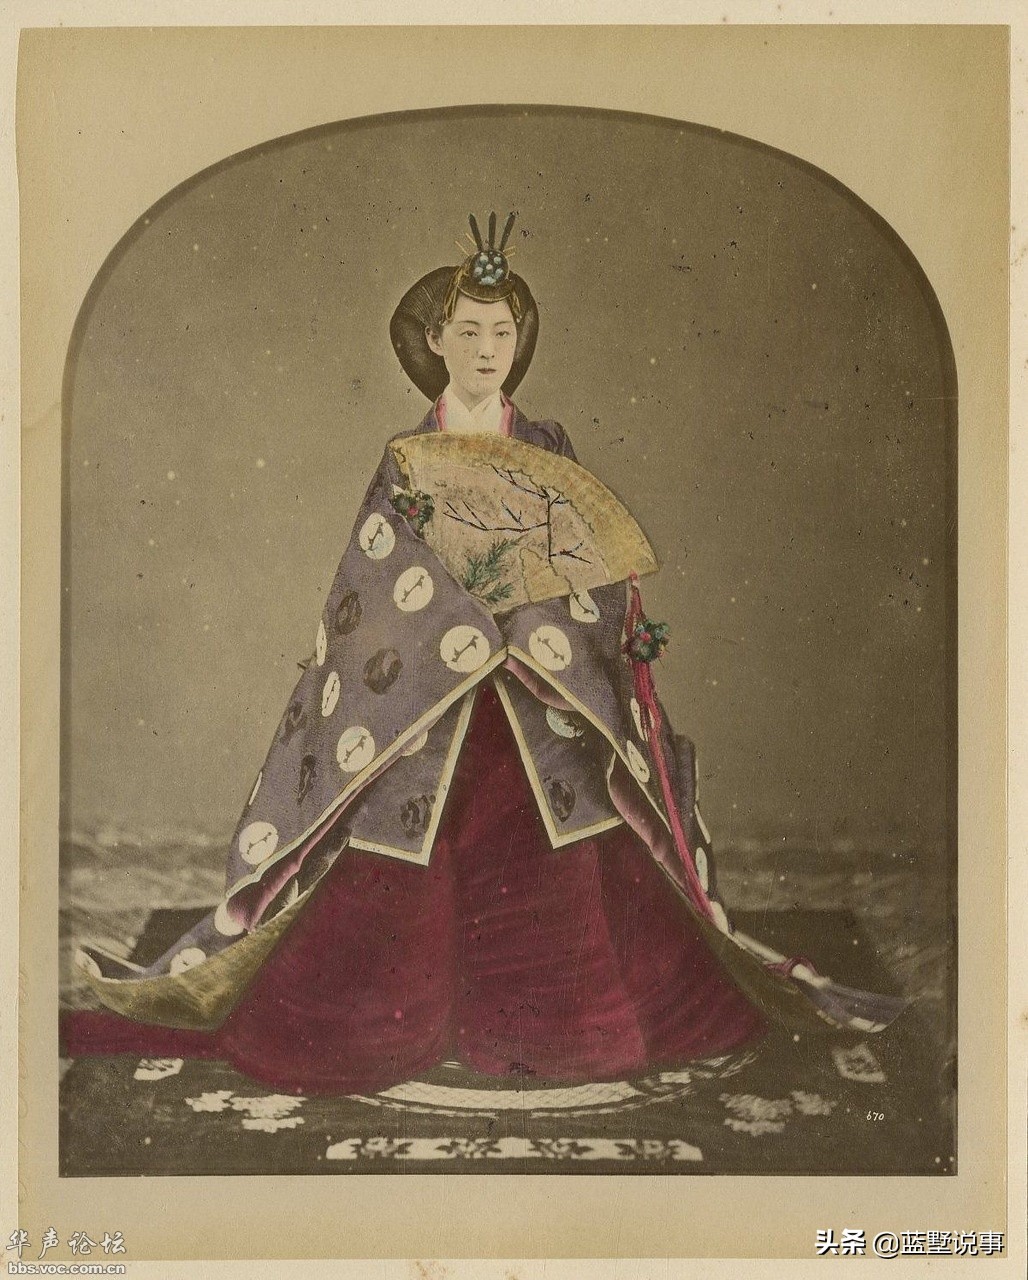 三十張老照片 日本明治年間的景色人物 昭憲皇太后被稱為天狗娘 藍墅説事 Mdeditor